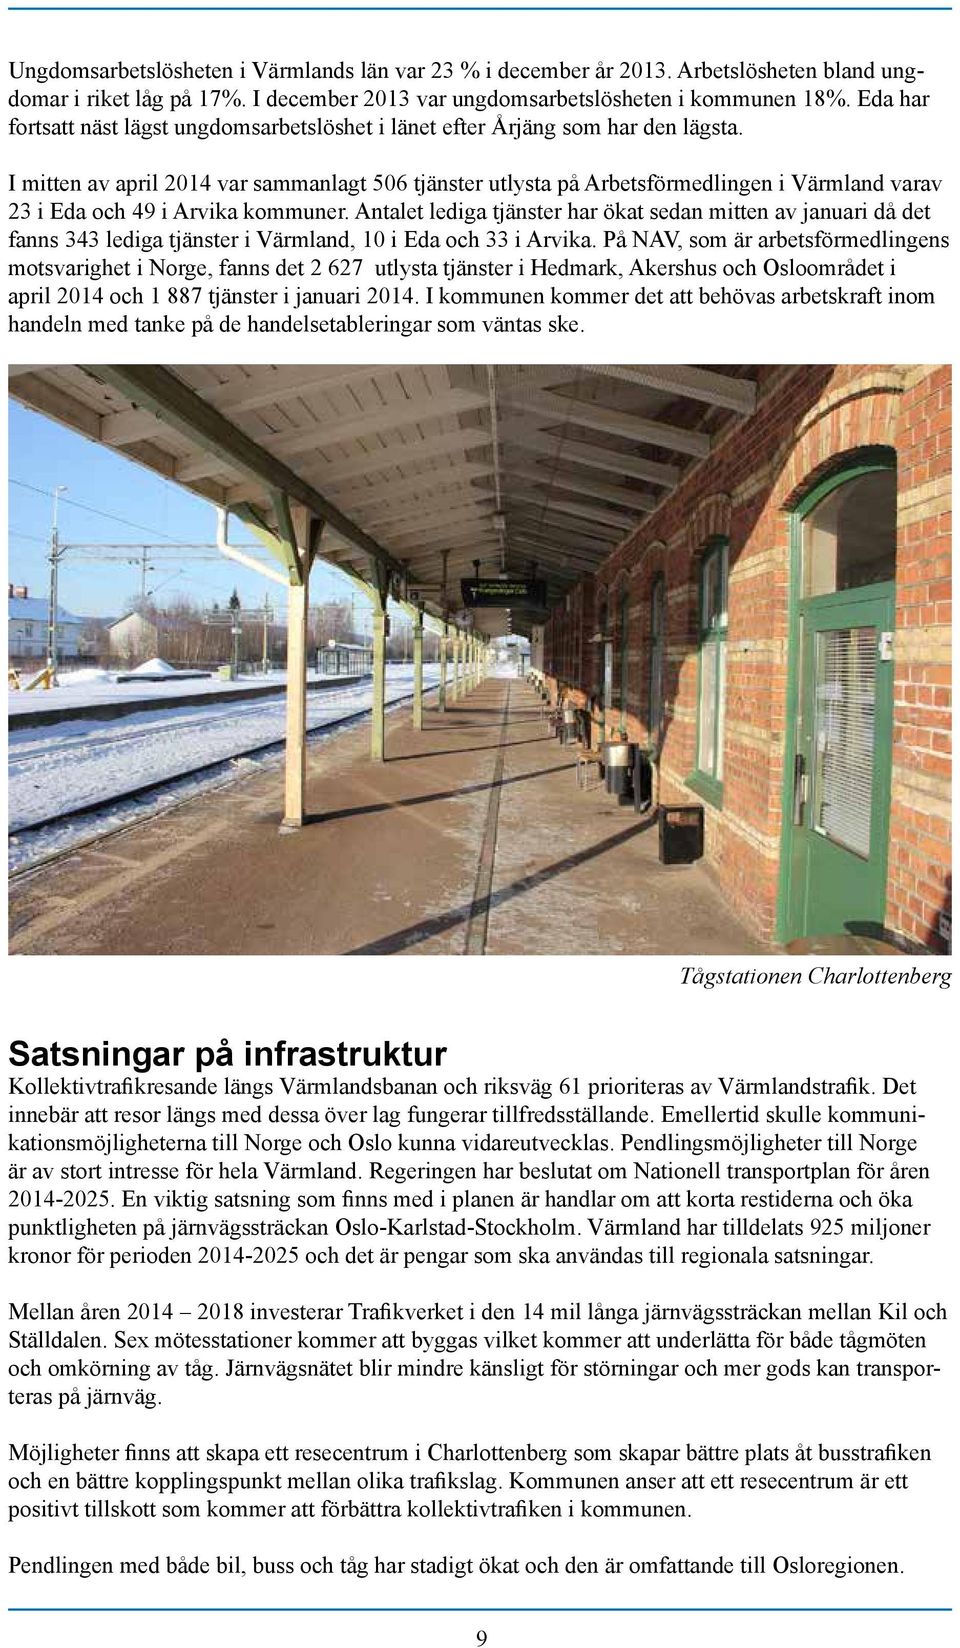 I mitten av april 2014 var sammanlagt 506 tjänster utlysta på Arbetsförmedlingen i Värmland varav 23 i Eda och 49 i Arvika kommuner.